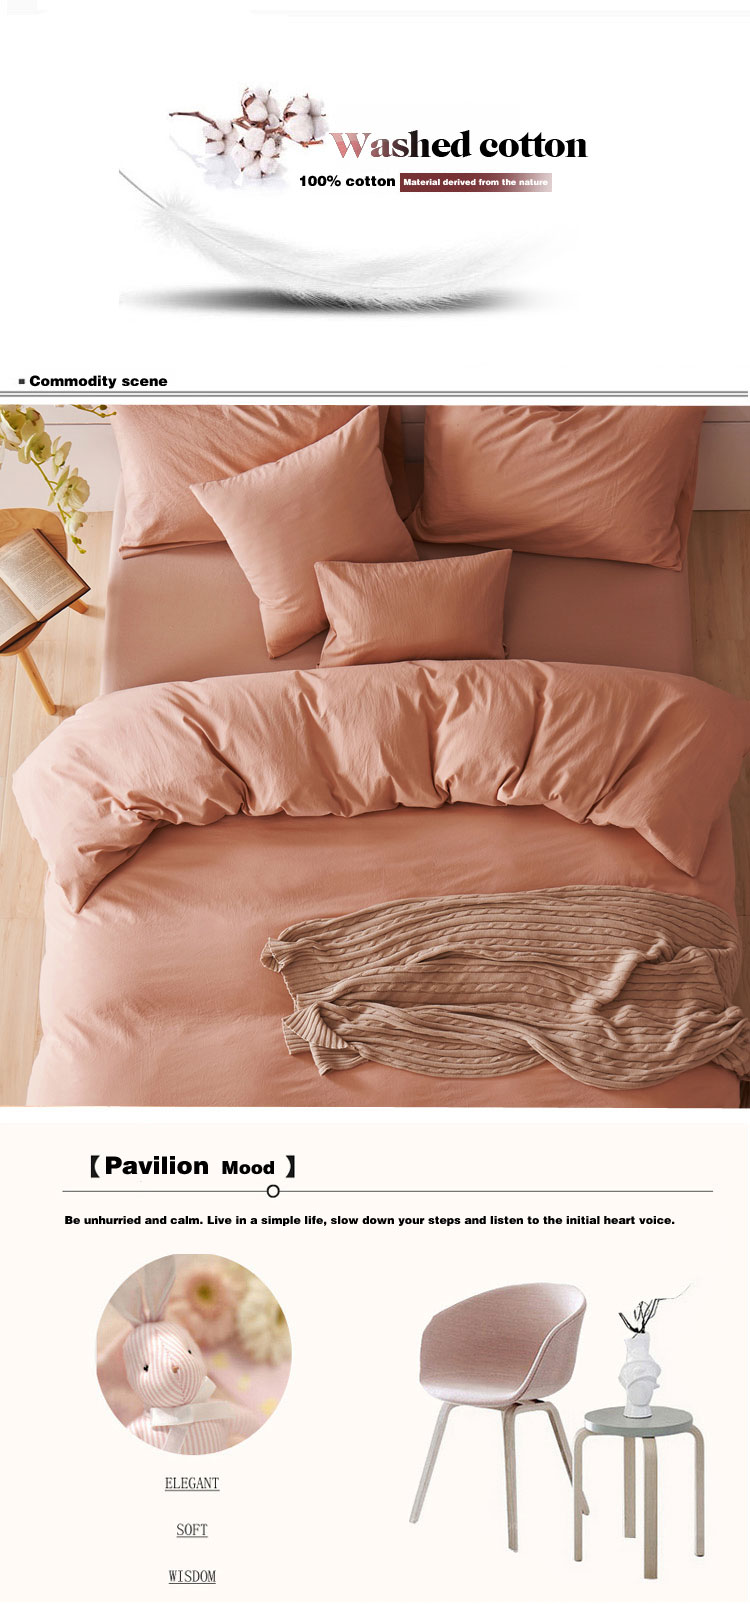 Plain Dyed 100% Cotton Plaid Comforter